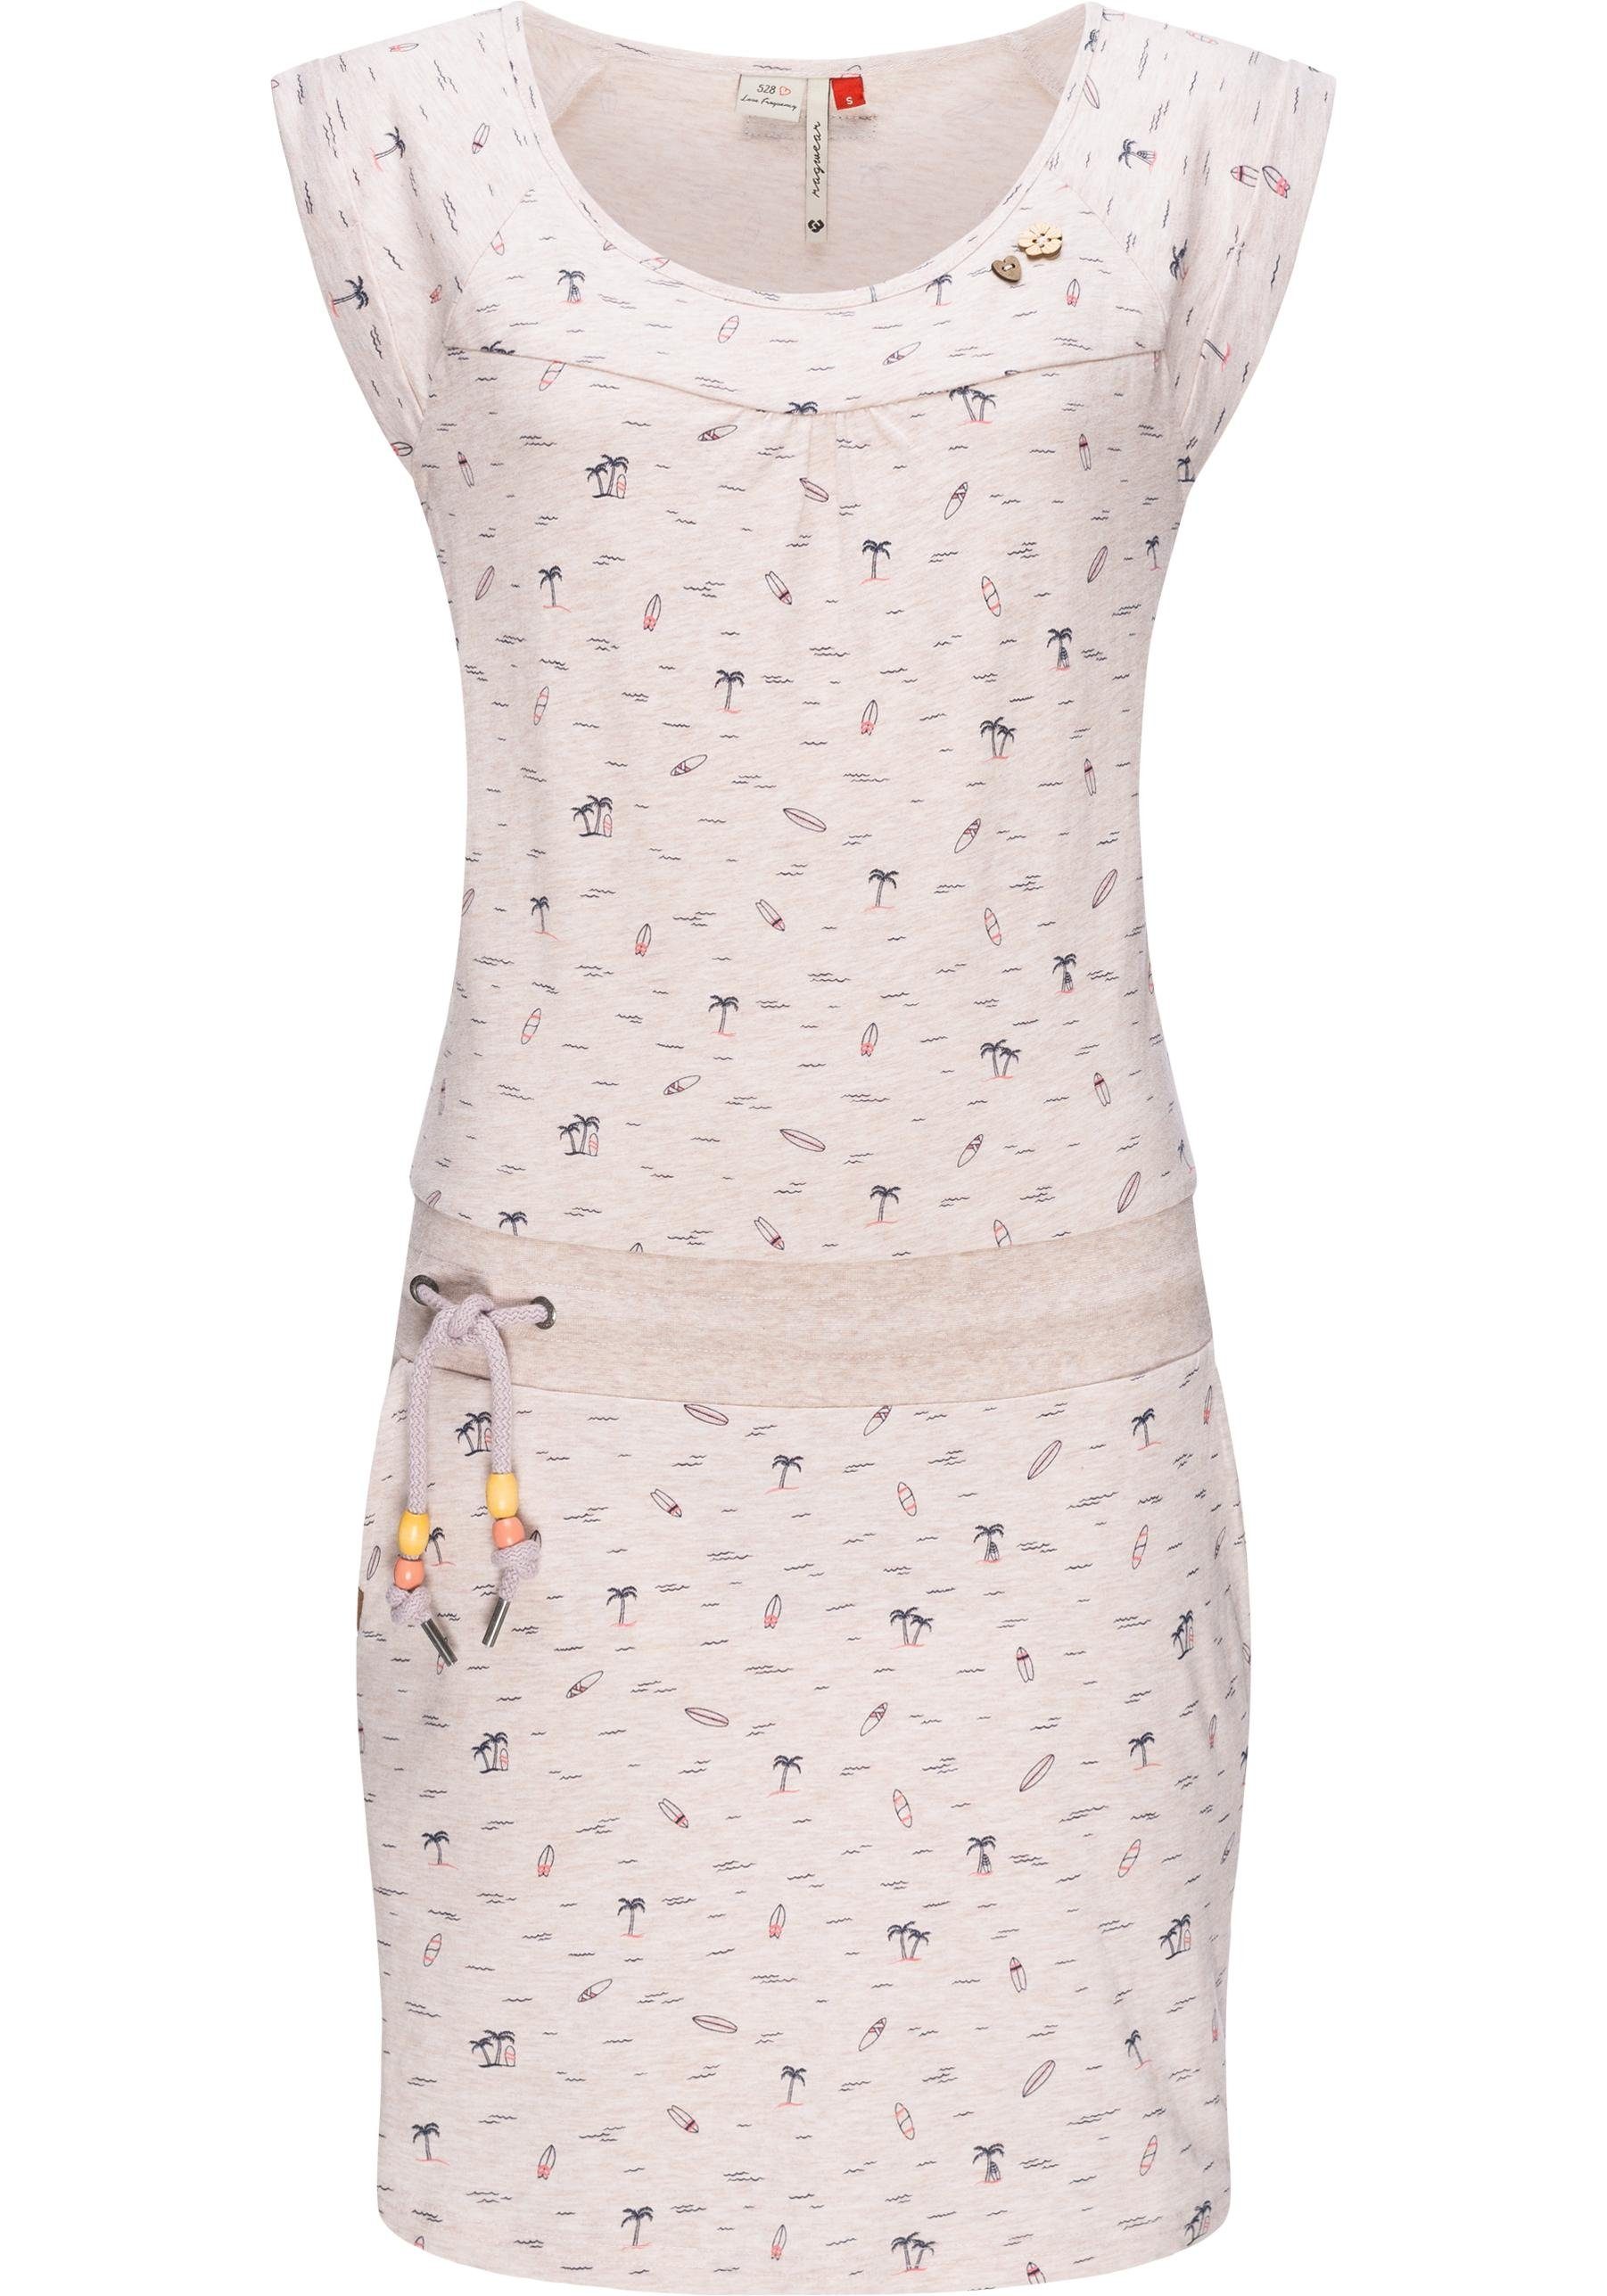 Ragwear Sommerkleid Penelope leichtes Baumwoll Kleid mit Print beige